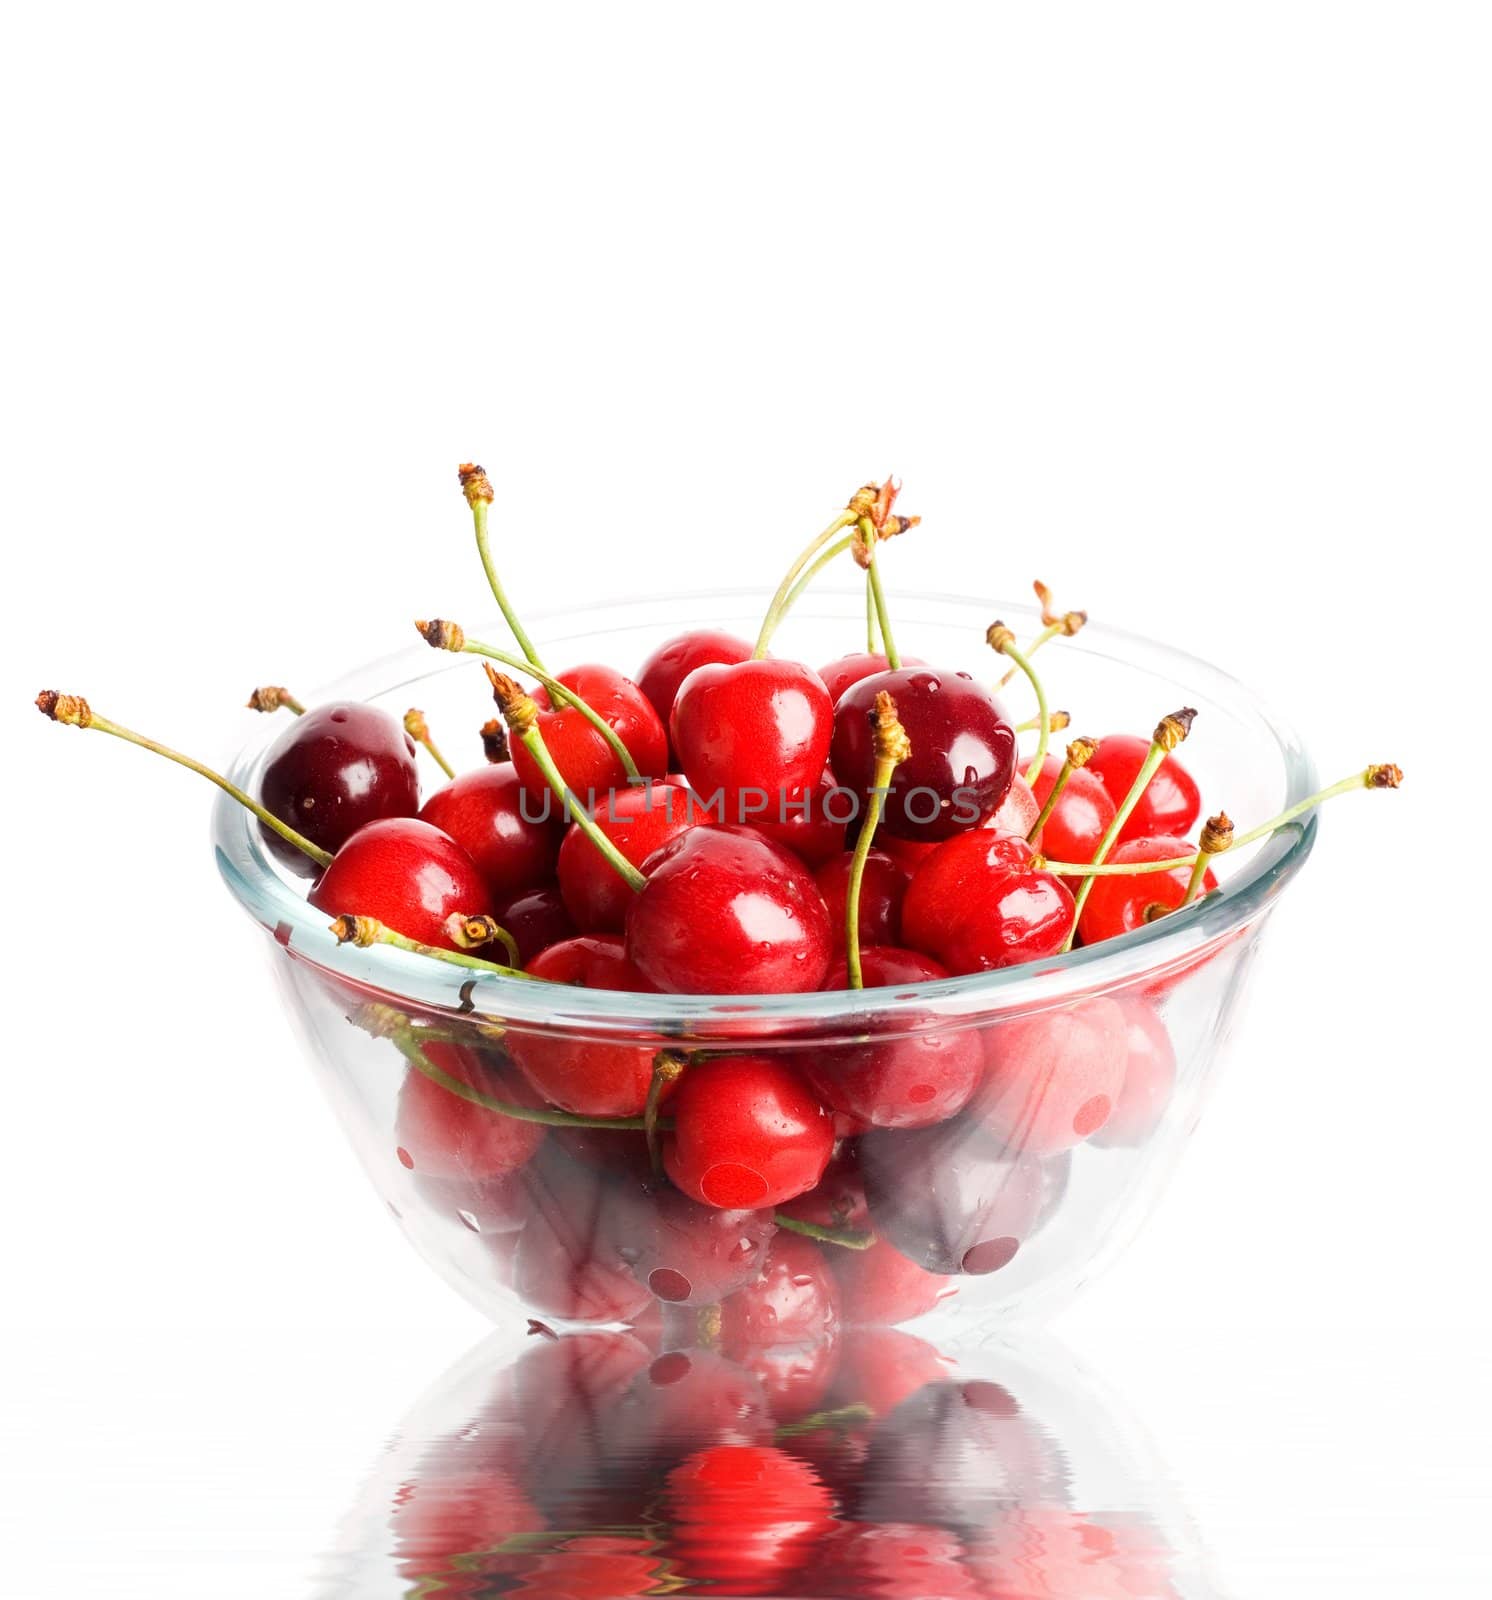 Cherries by velkol